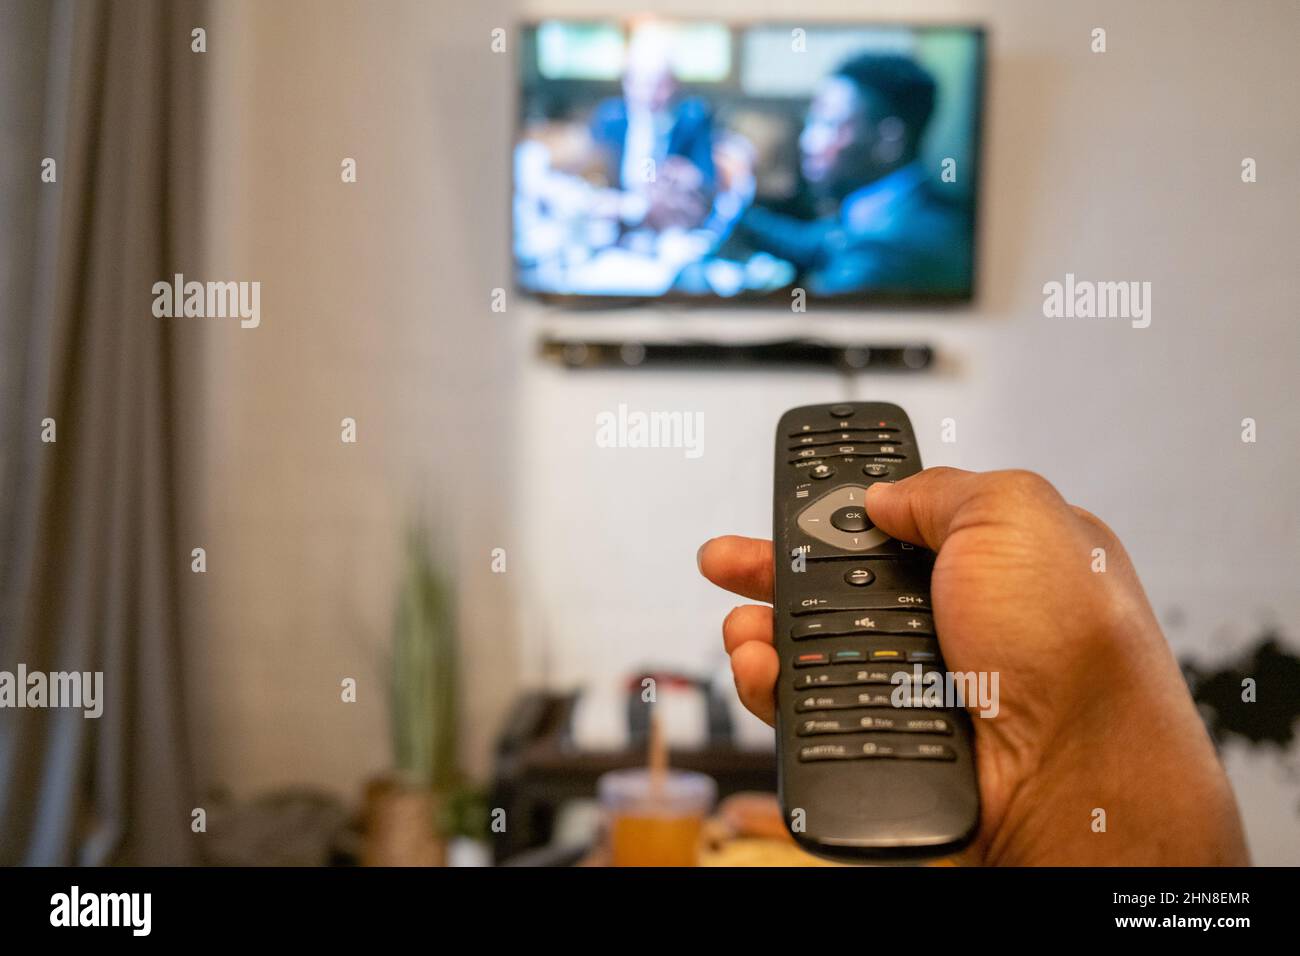 Primer plano de MAN pulsando los botones del mando a distancia para cambiar el canal del televisor de la habitación Foto de stock